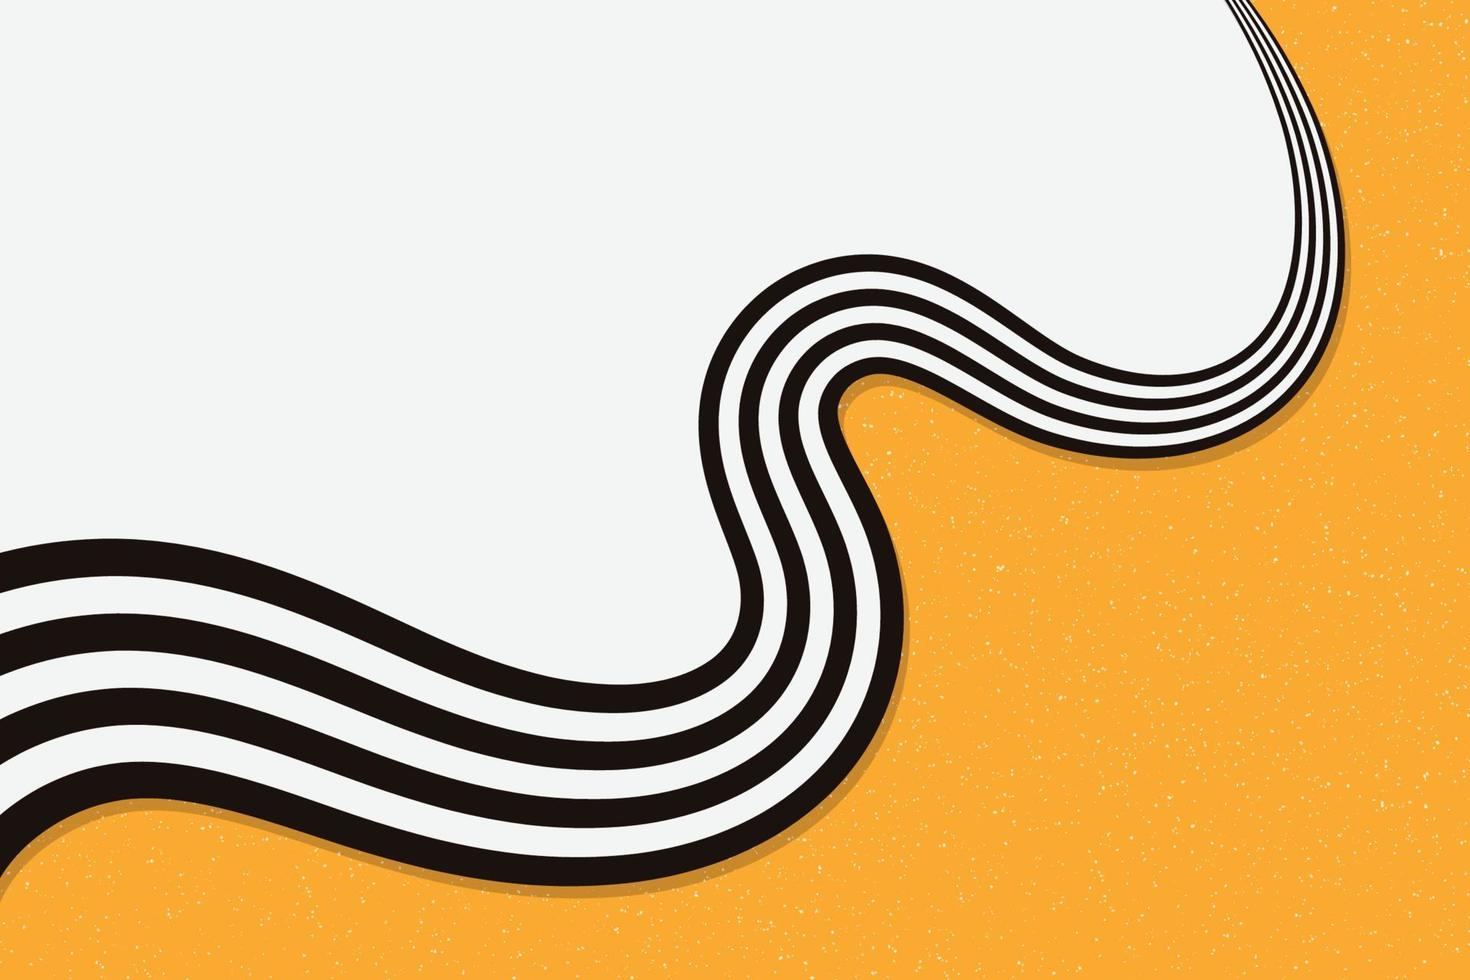 líneas curvas a rayas abstractas freno de fondo en colores naranja y blanco en estilo retro y vintage vector